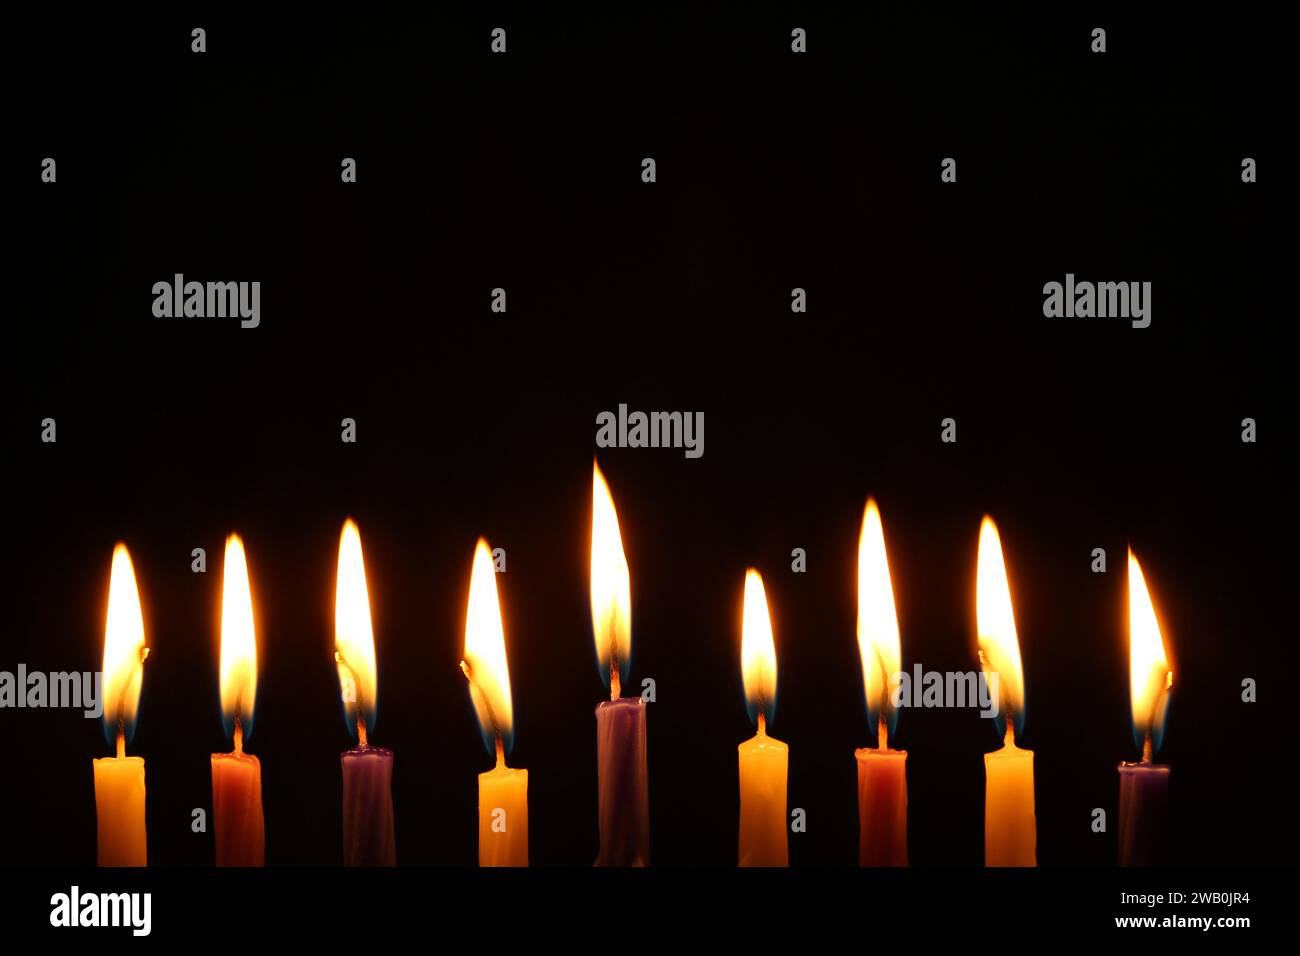 Hanukkah celebration. Burning candles on black background Stock Photo